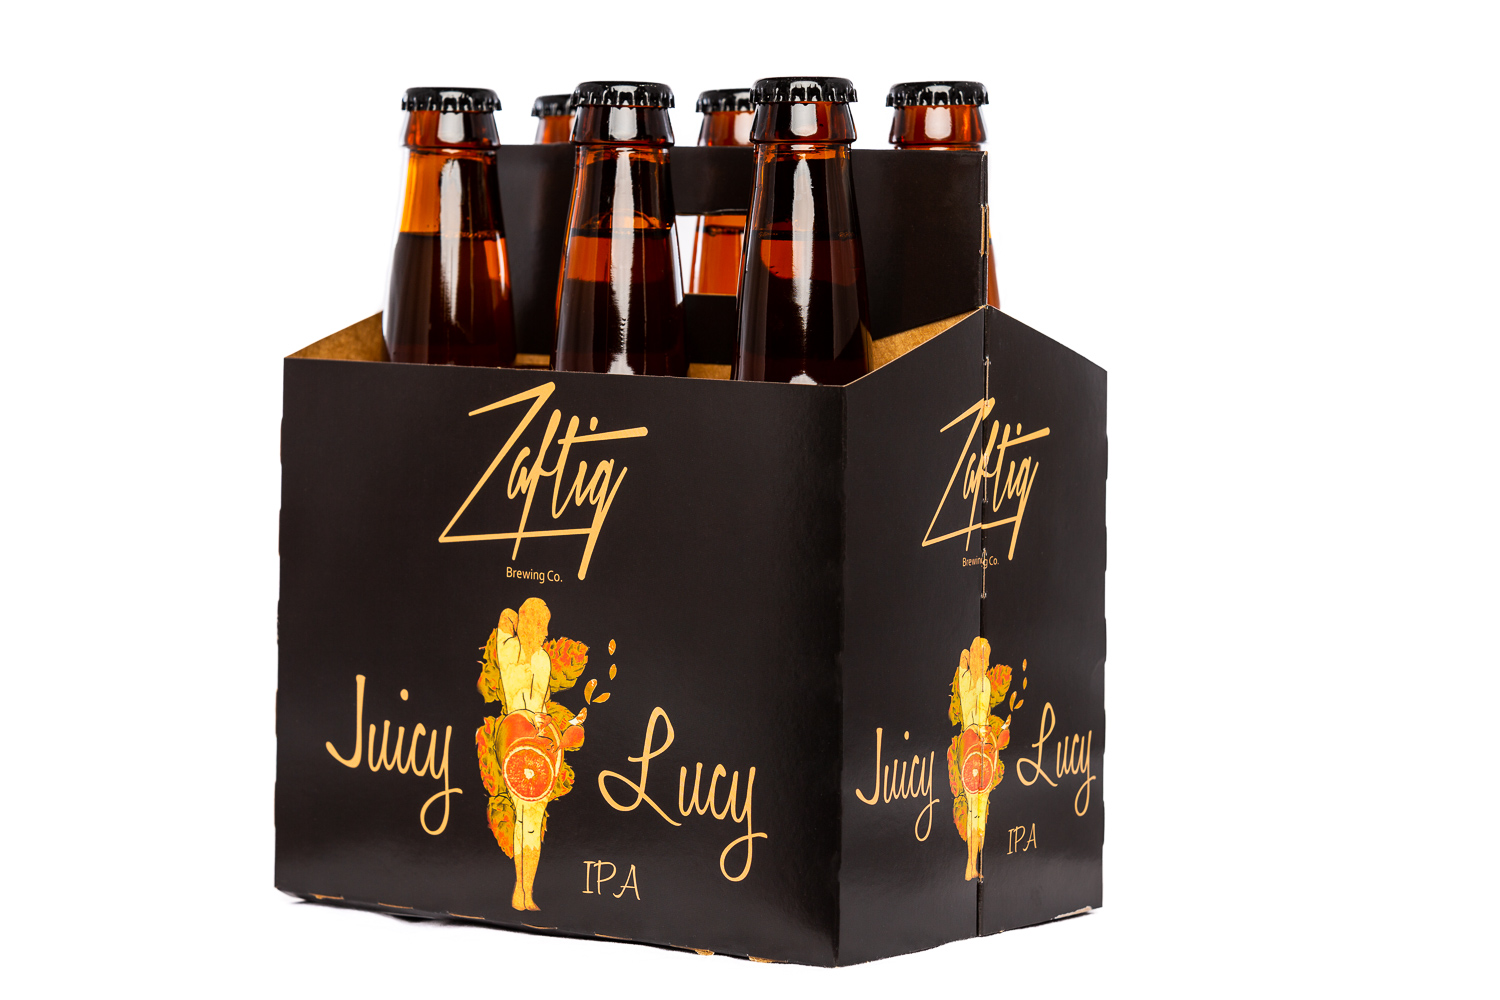 Zaftig - Multi-Pack-Juicy Lucy.JPG